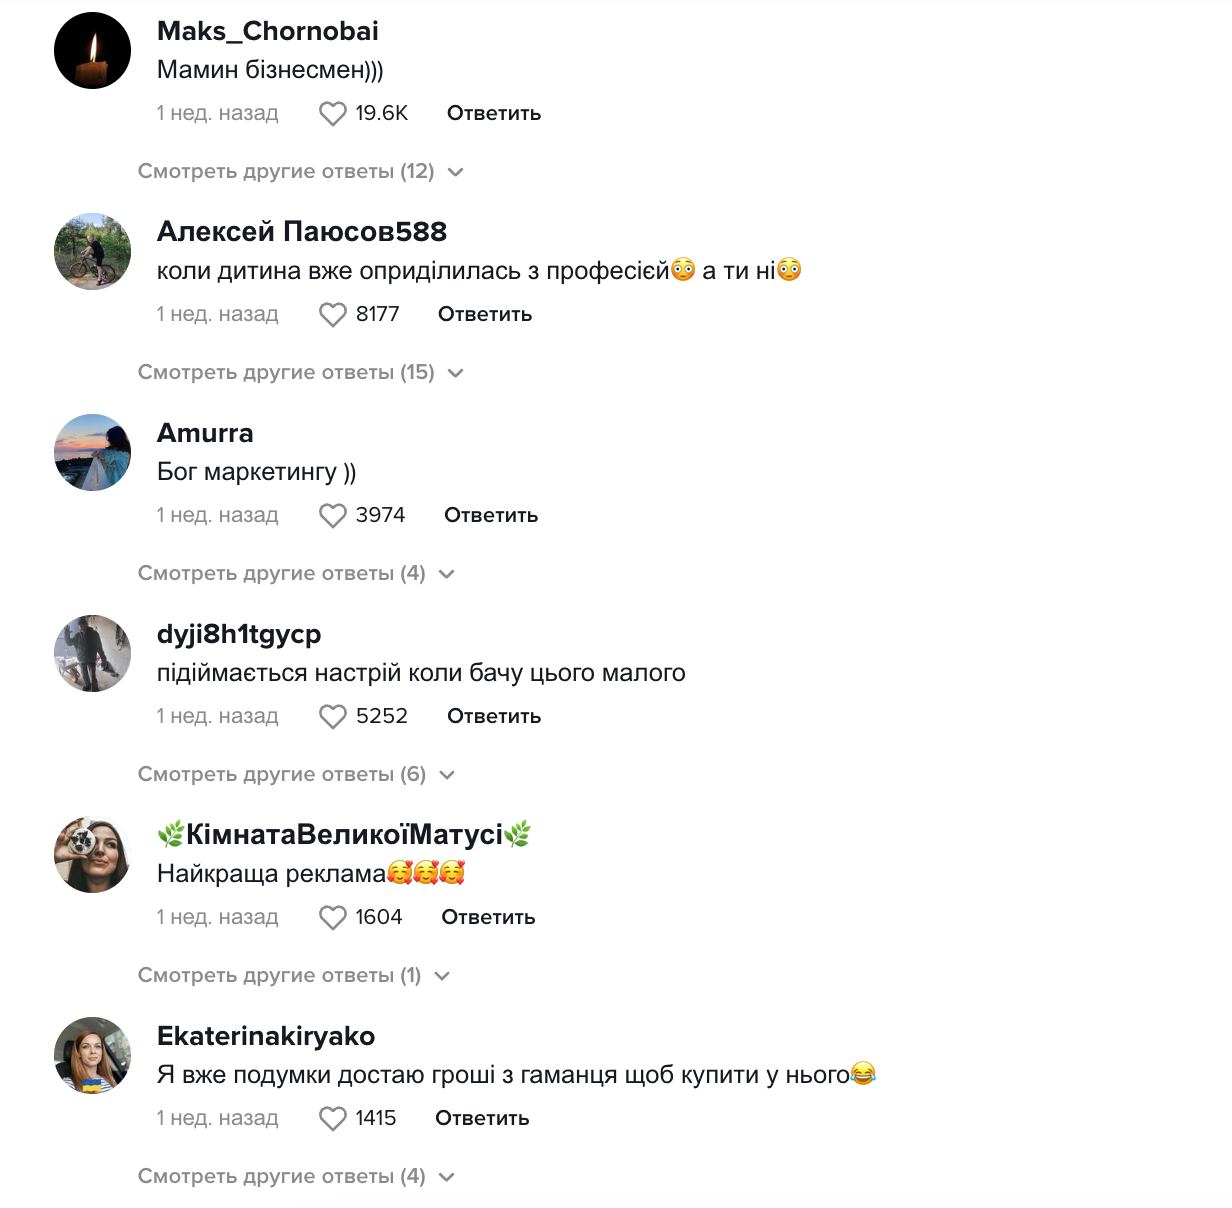 "Скоро вже буде Паска": маленький украинец восхитил сеть оригинальной рекламой и стал звездой вирусного трека